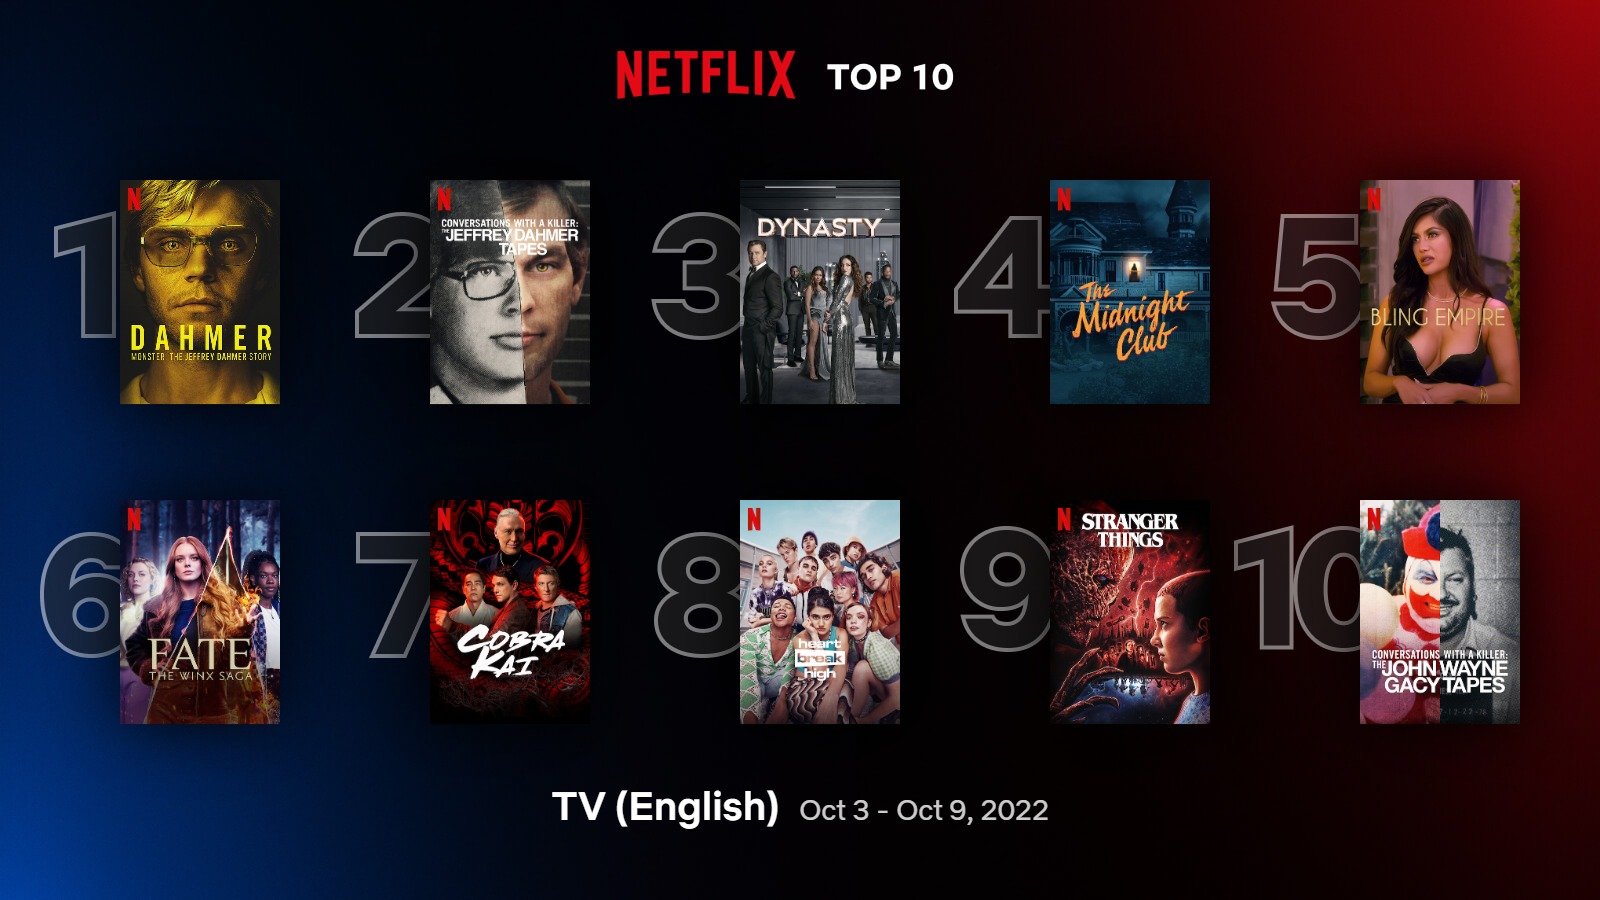 Netflix Top 10